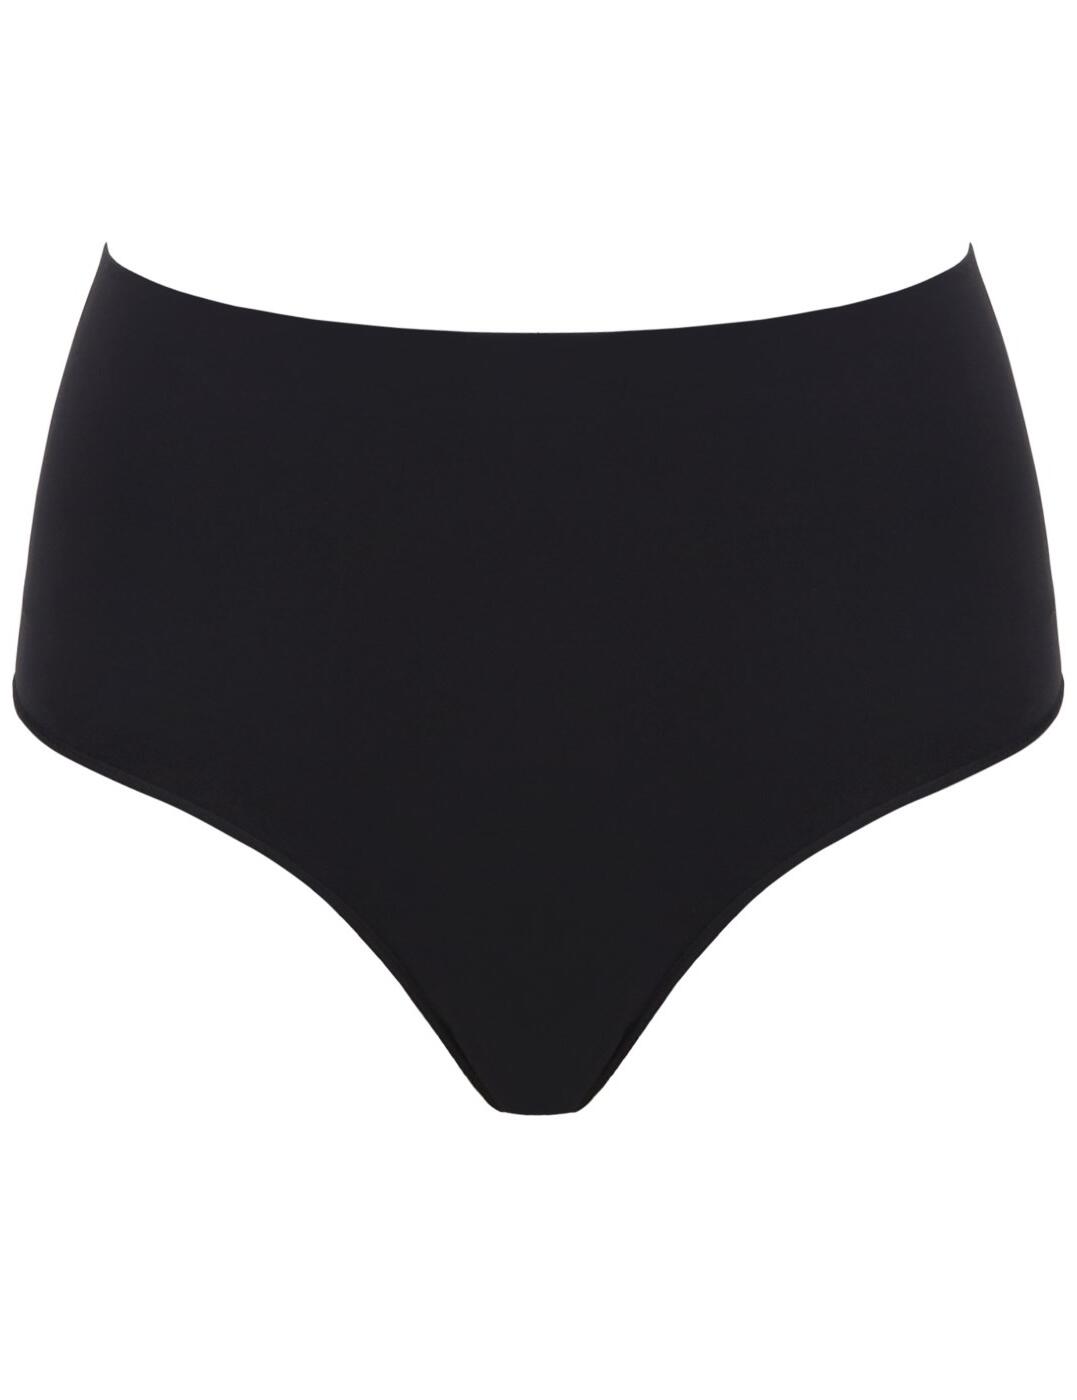 SPANX Everyday Shaping Panties Brief in Very Black